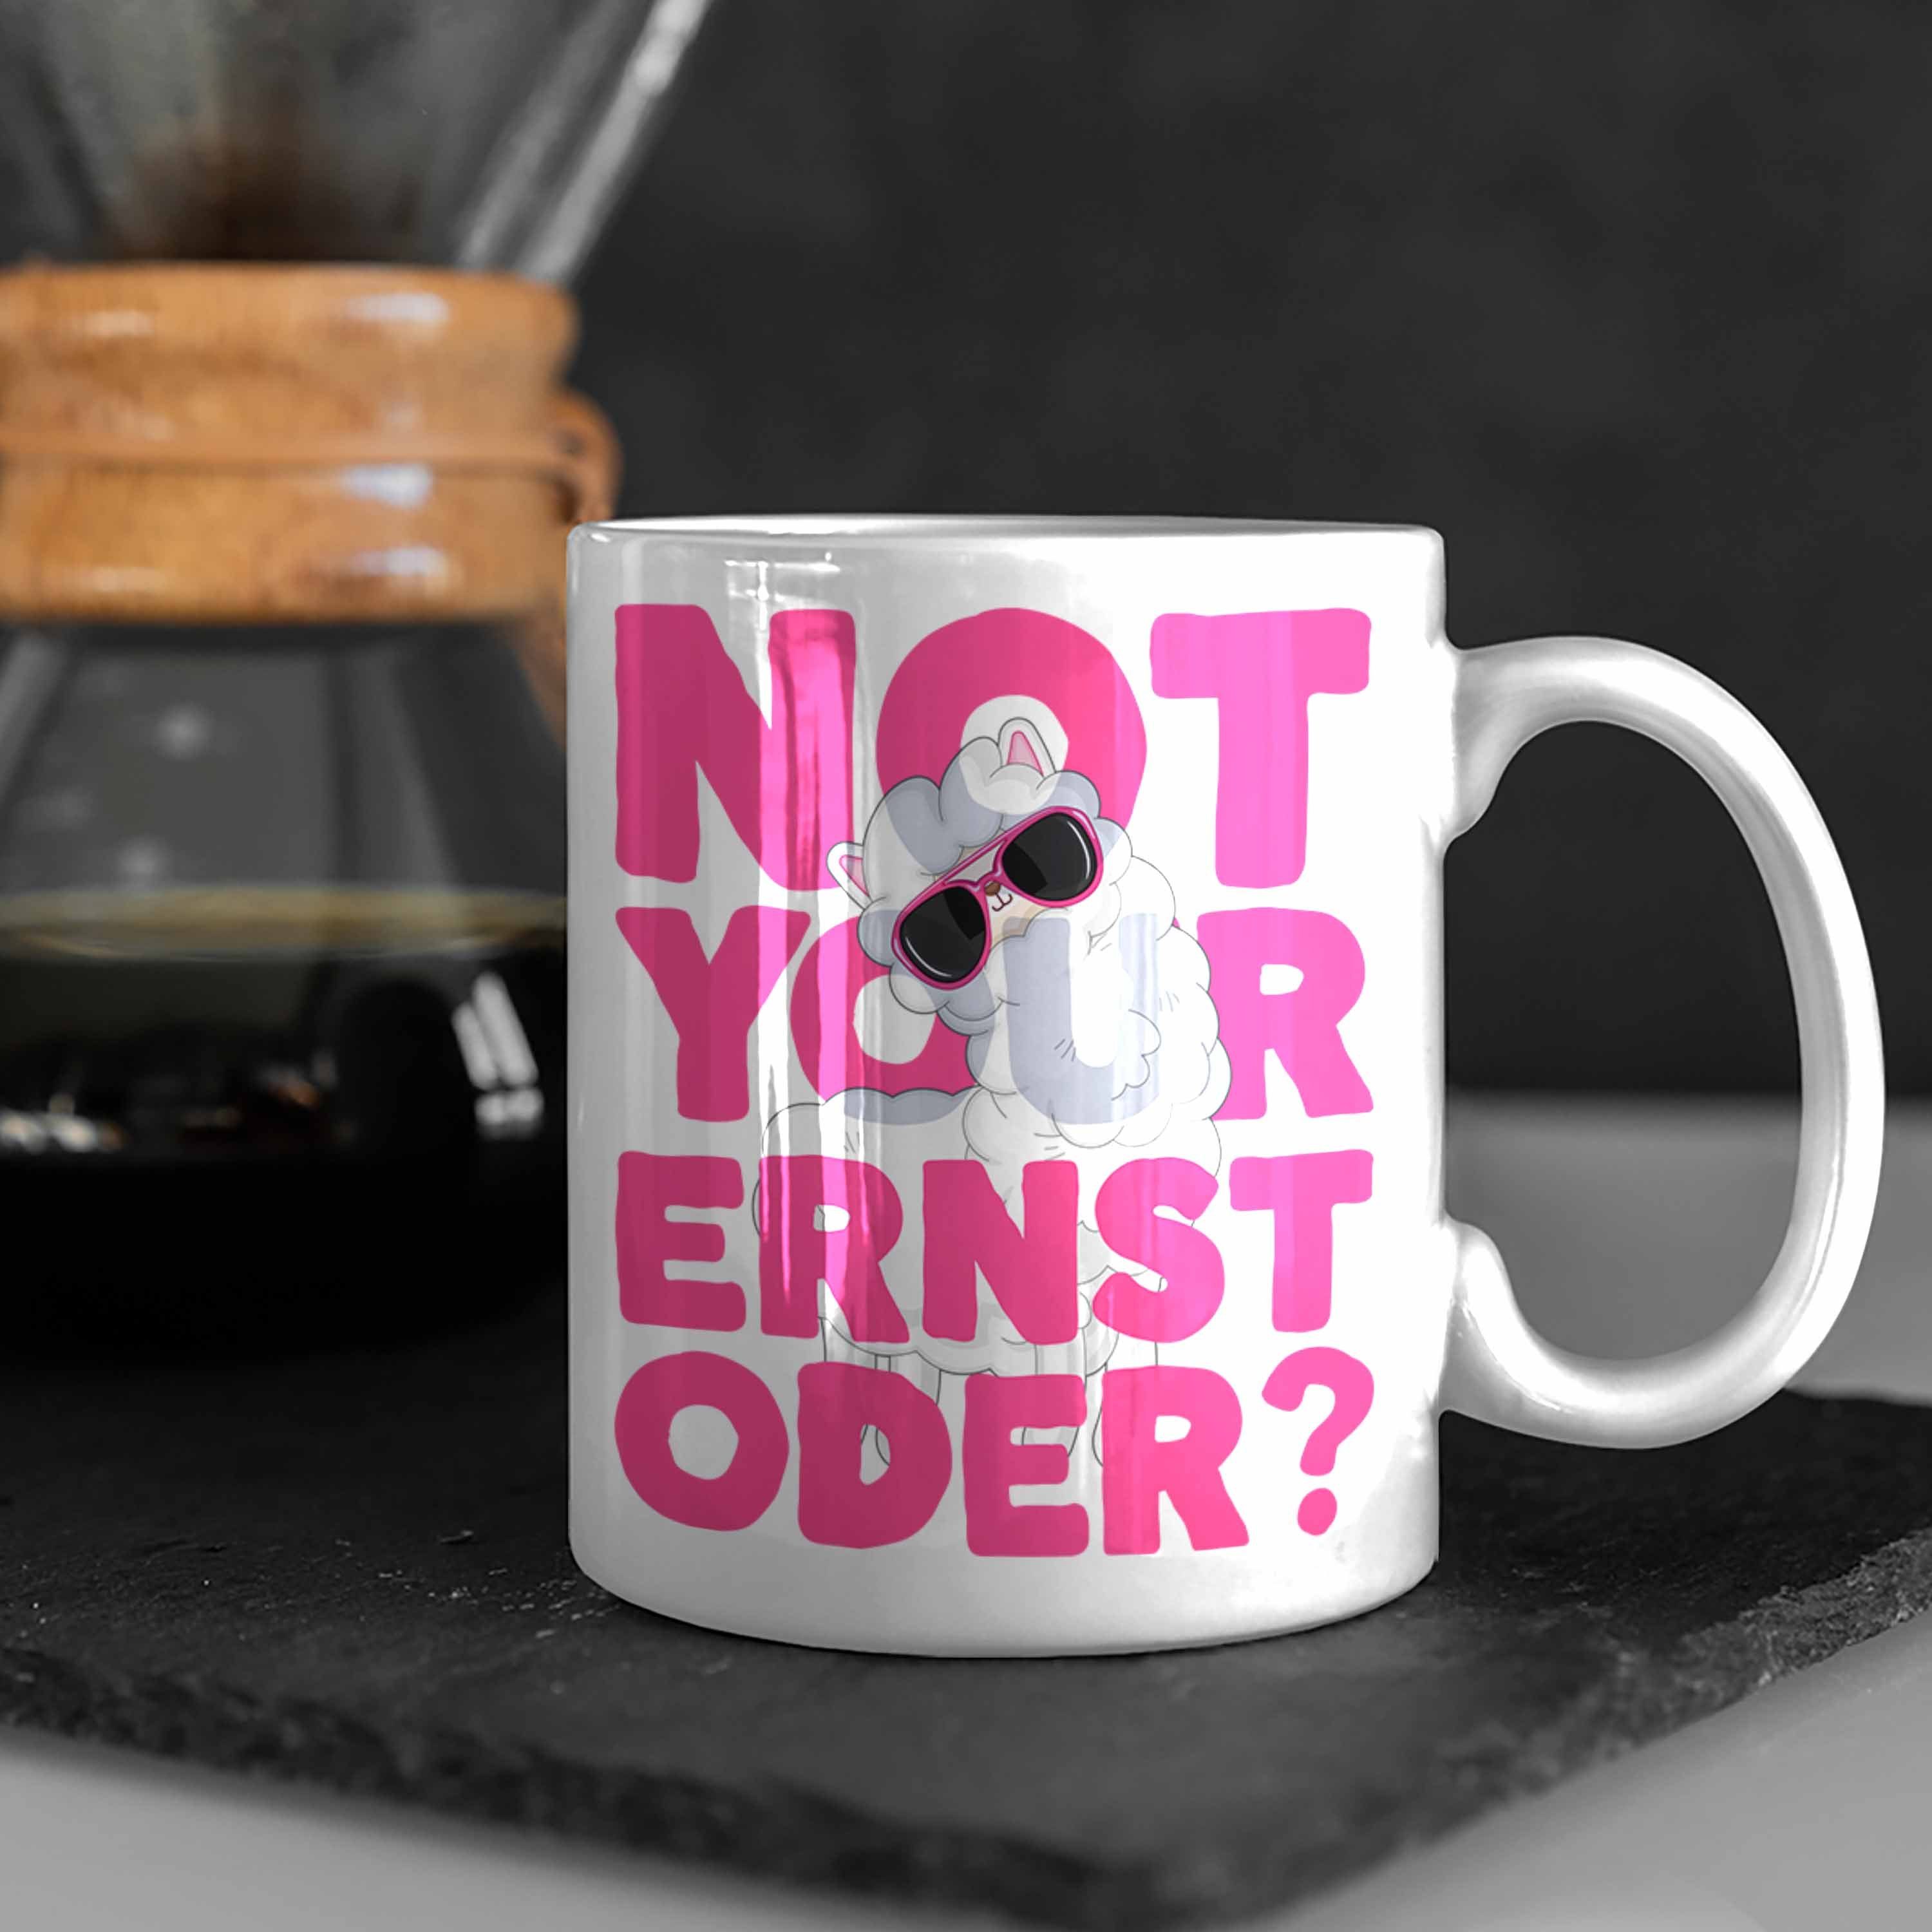 Trendation Tasse Not mit Ernst Kaffeetasse Your für Oder Pink Frauen Llama Weiss Tasse Spruch